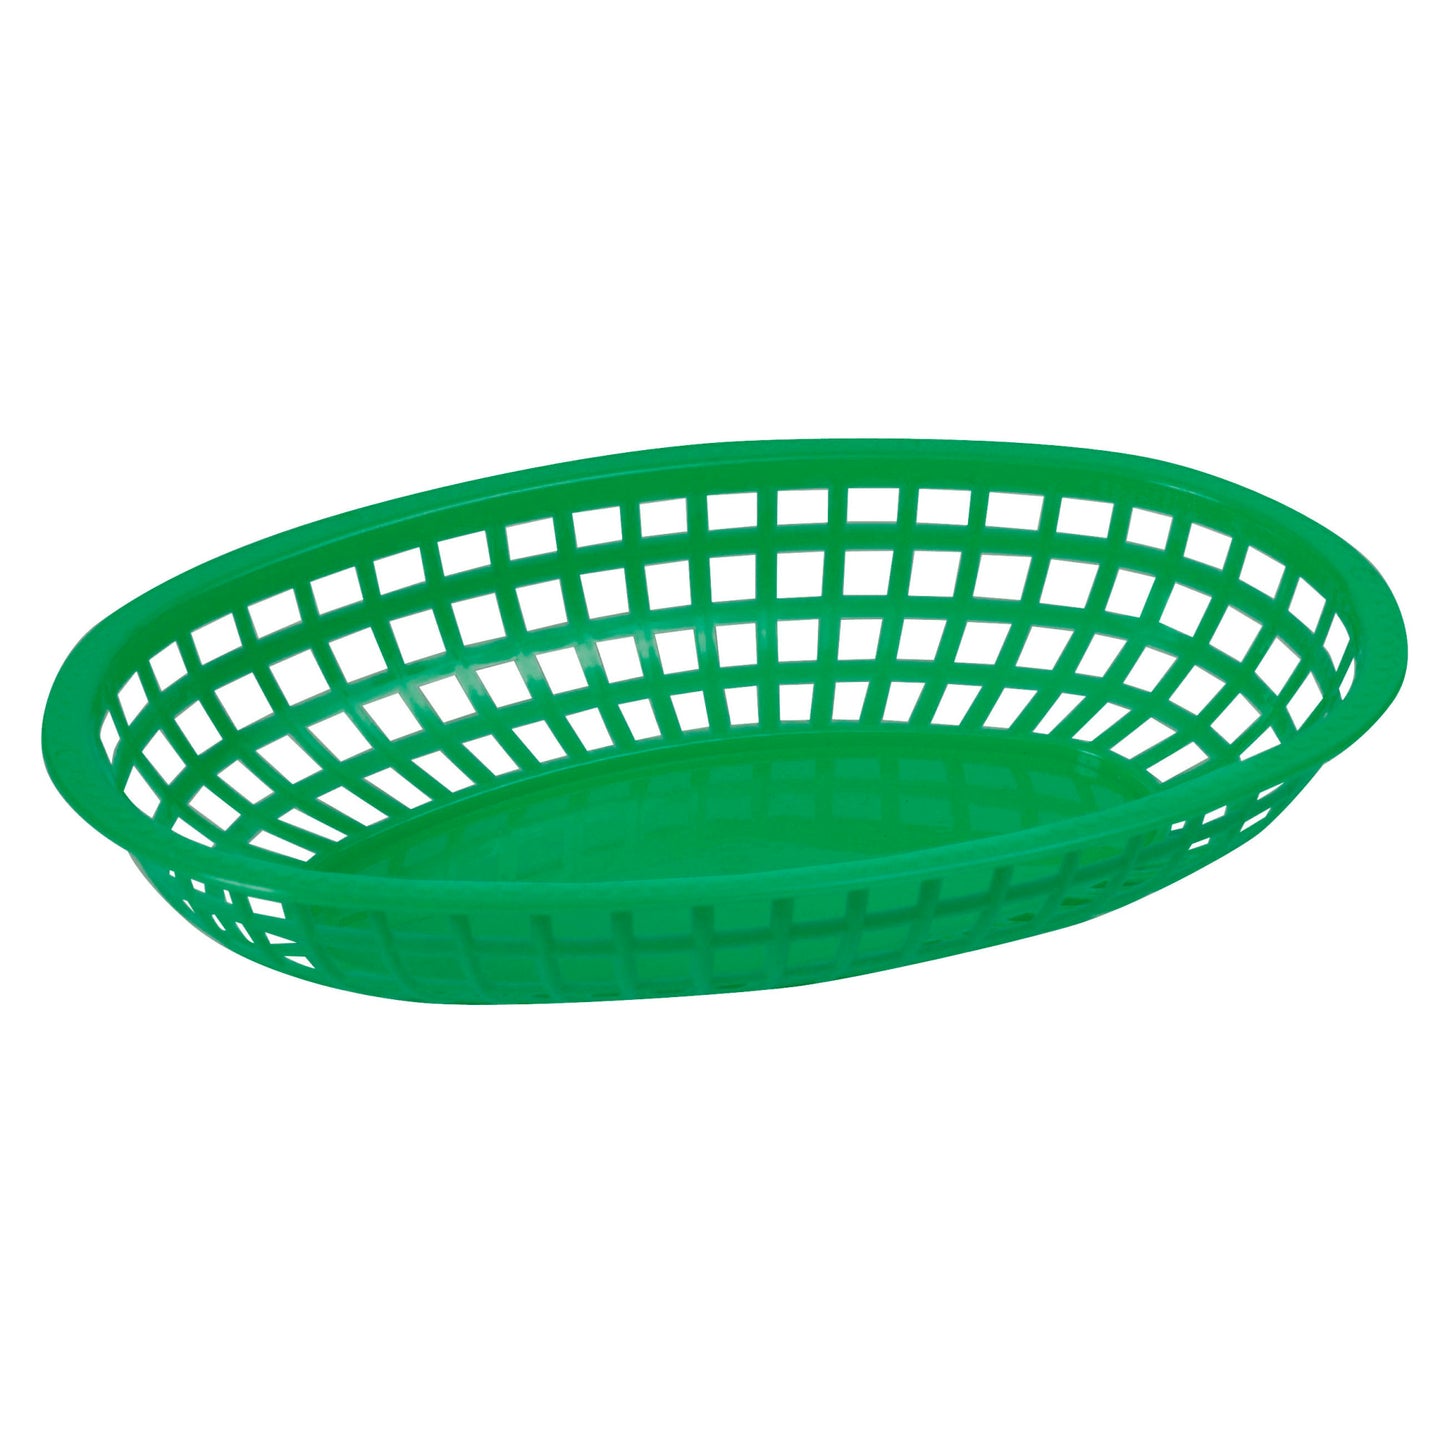 POB-G - Oval Fast Food Basket, 10-1/4" x 6-3/4" x 2" - Green